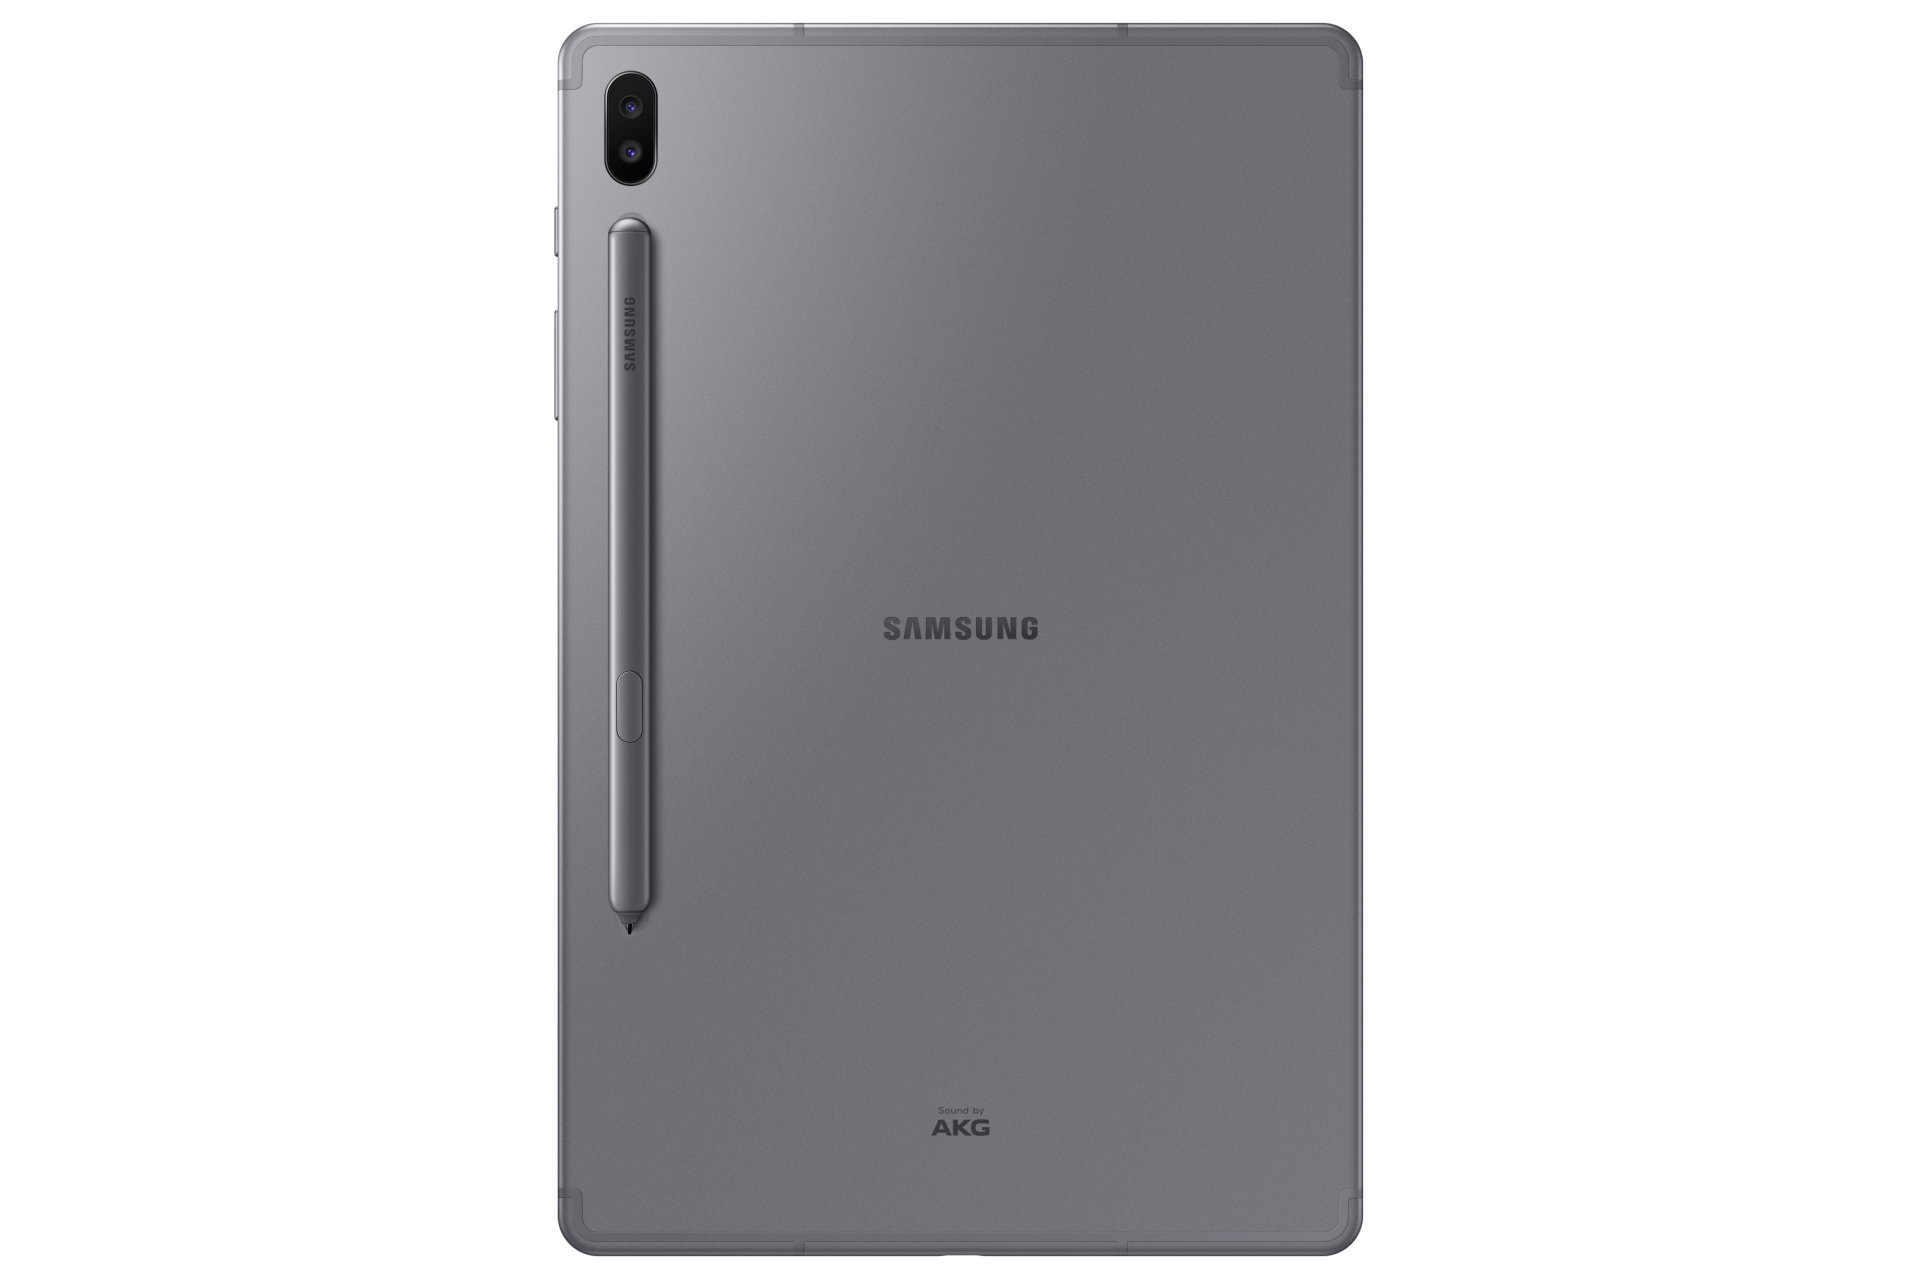 Samsung Galaxy Tab S6 cena premiera gdzie kupić najtaniej w Polsce opinie specyfikacja techniczna